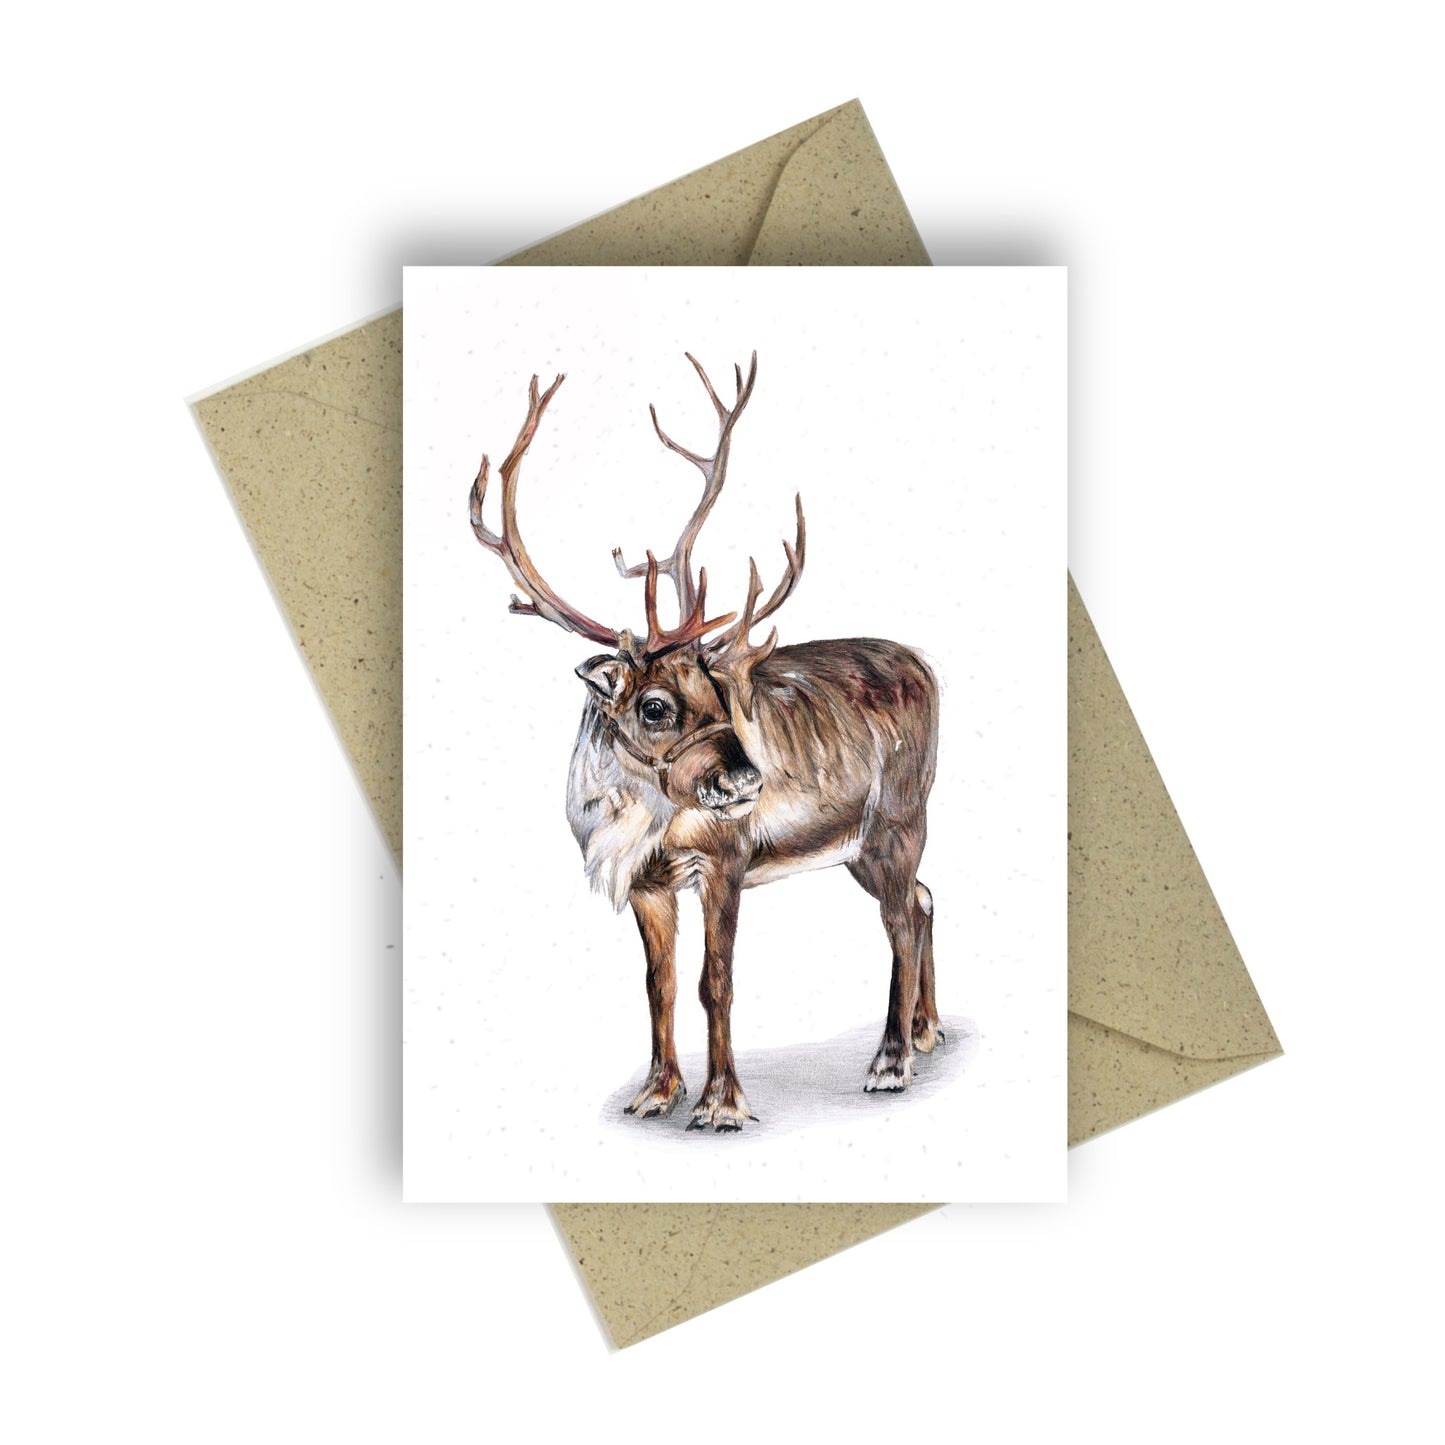 Greeting card “Reindeer”